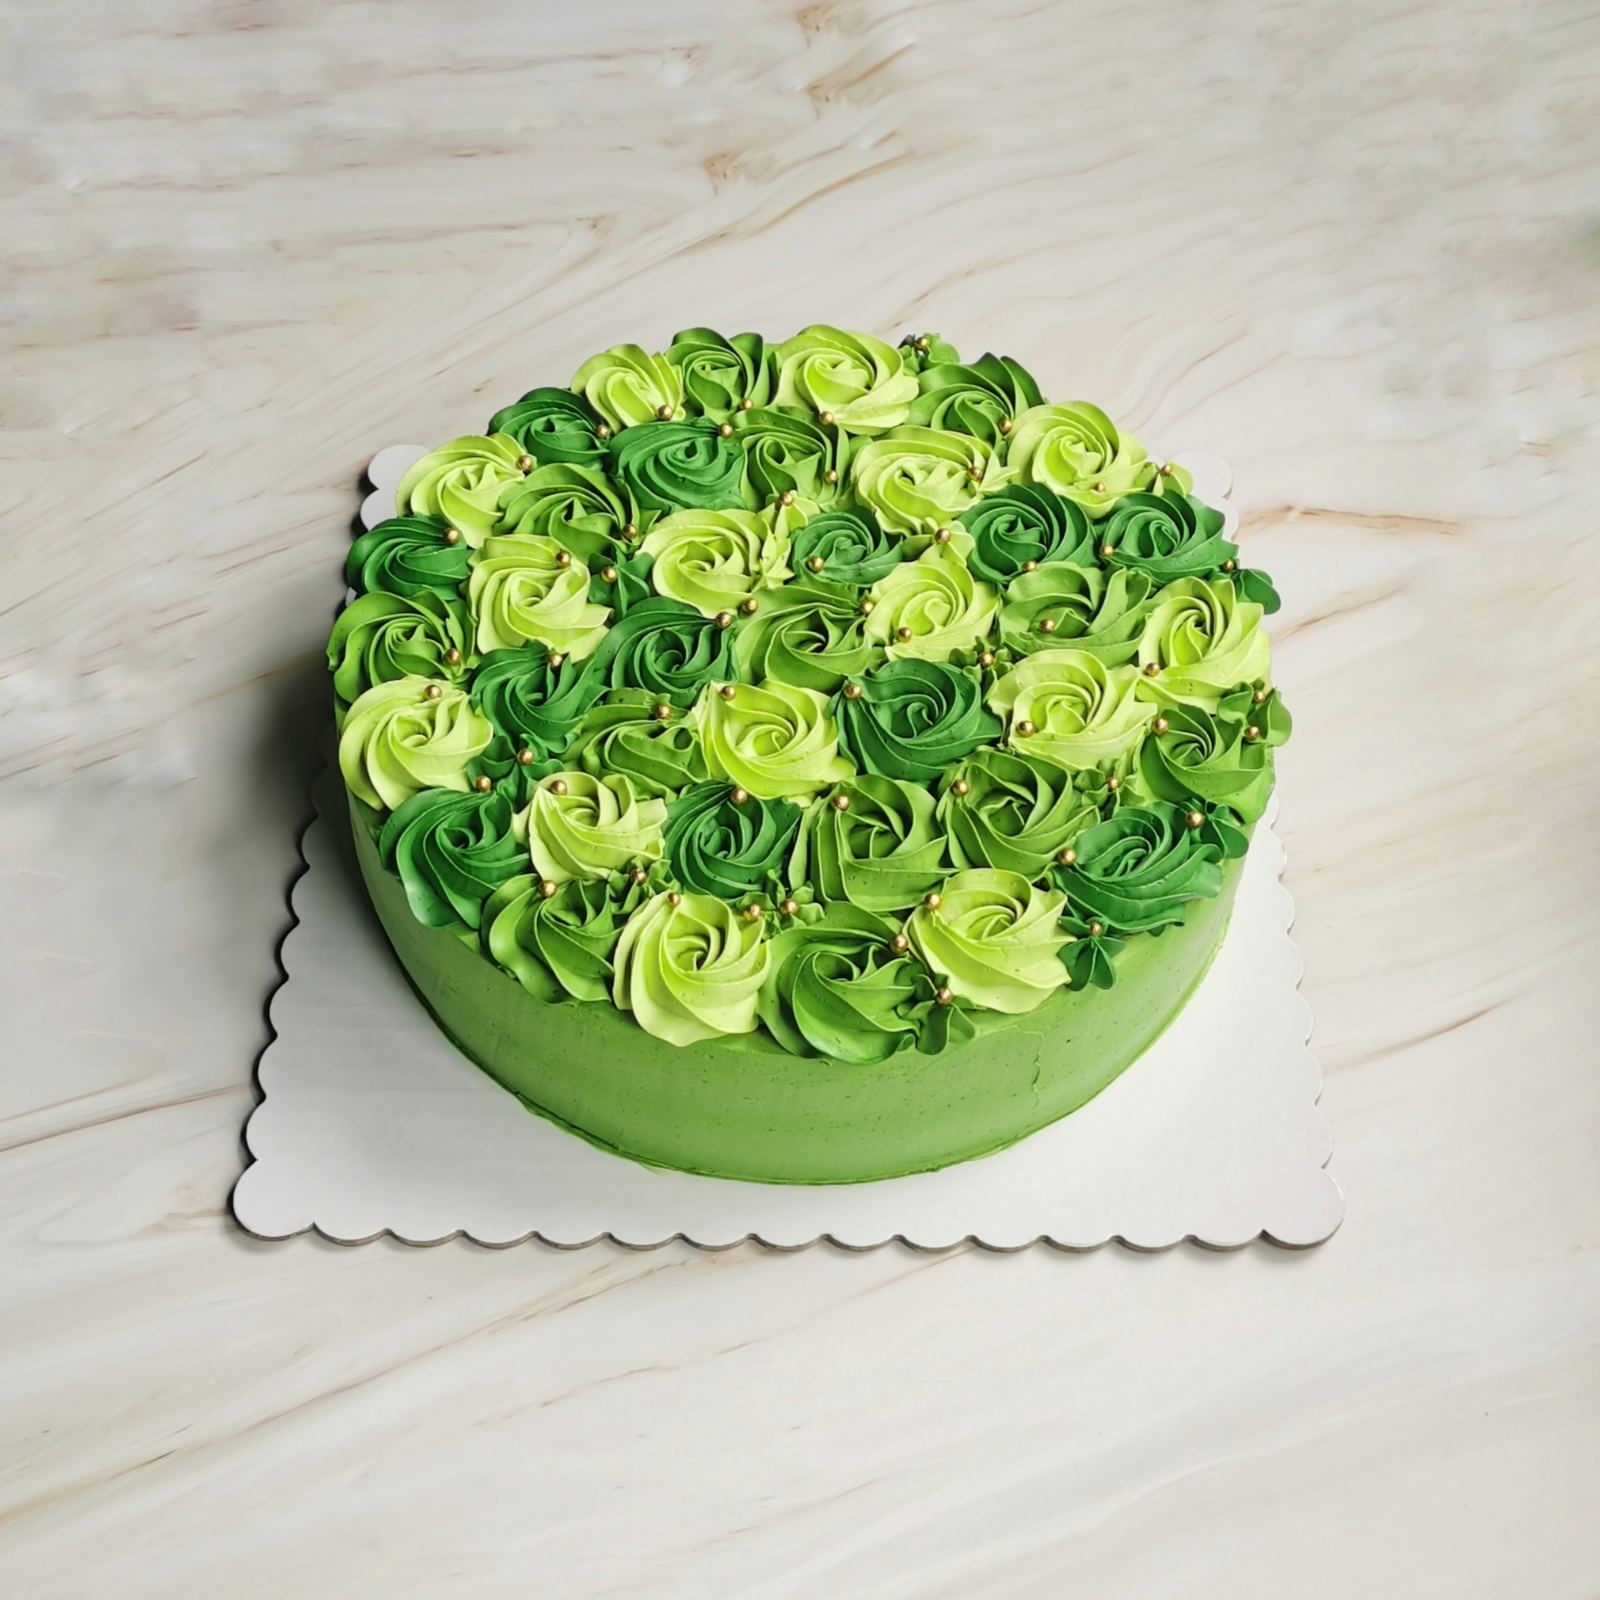 Cakes Savoury - Simple yet elegant rosette cake 🎂 | Facebook